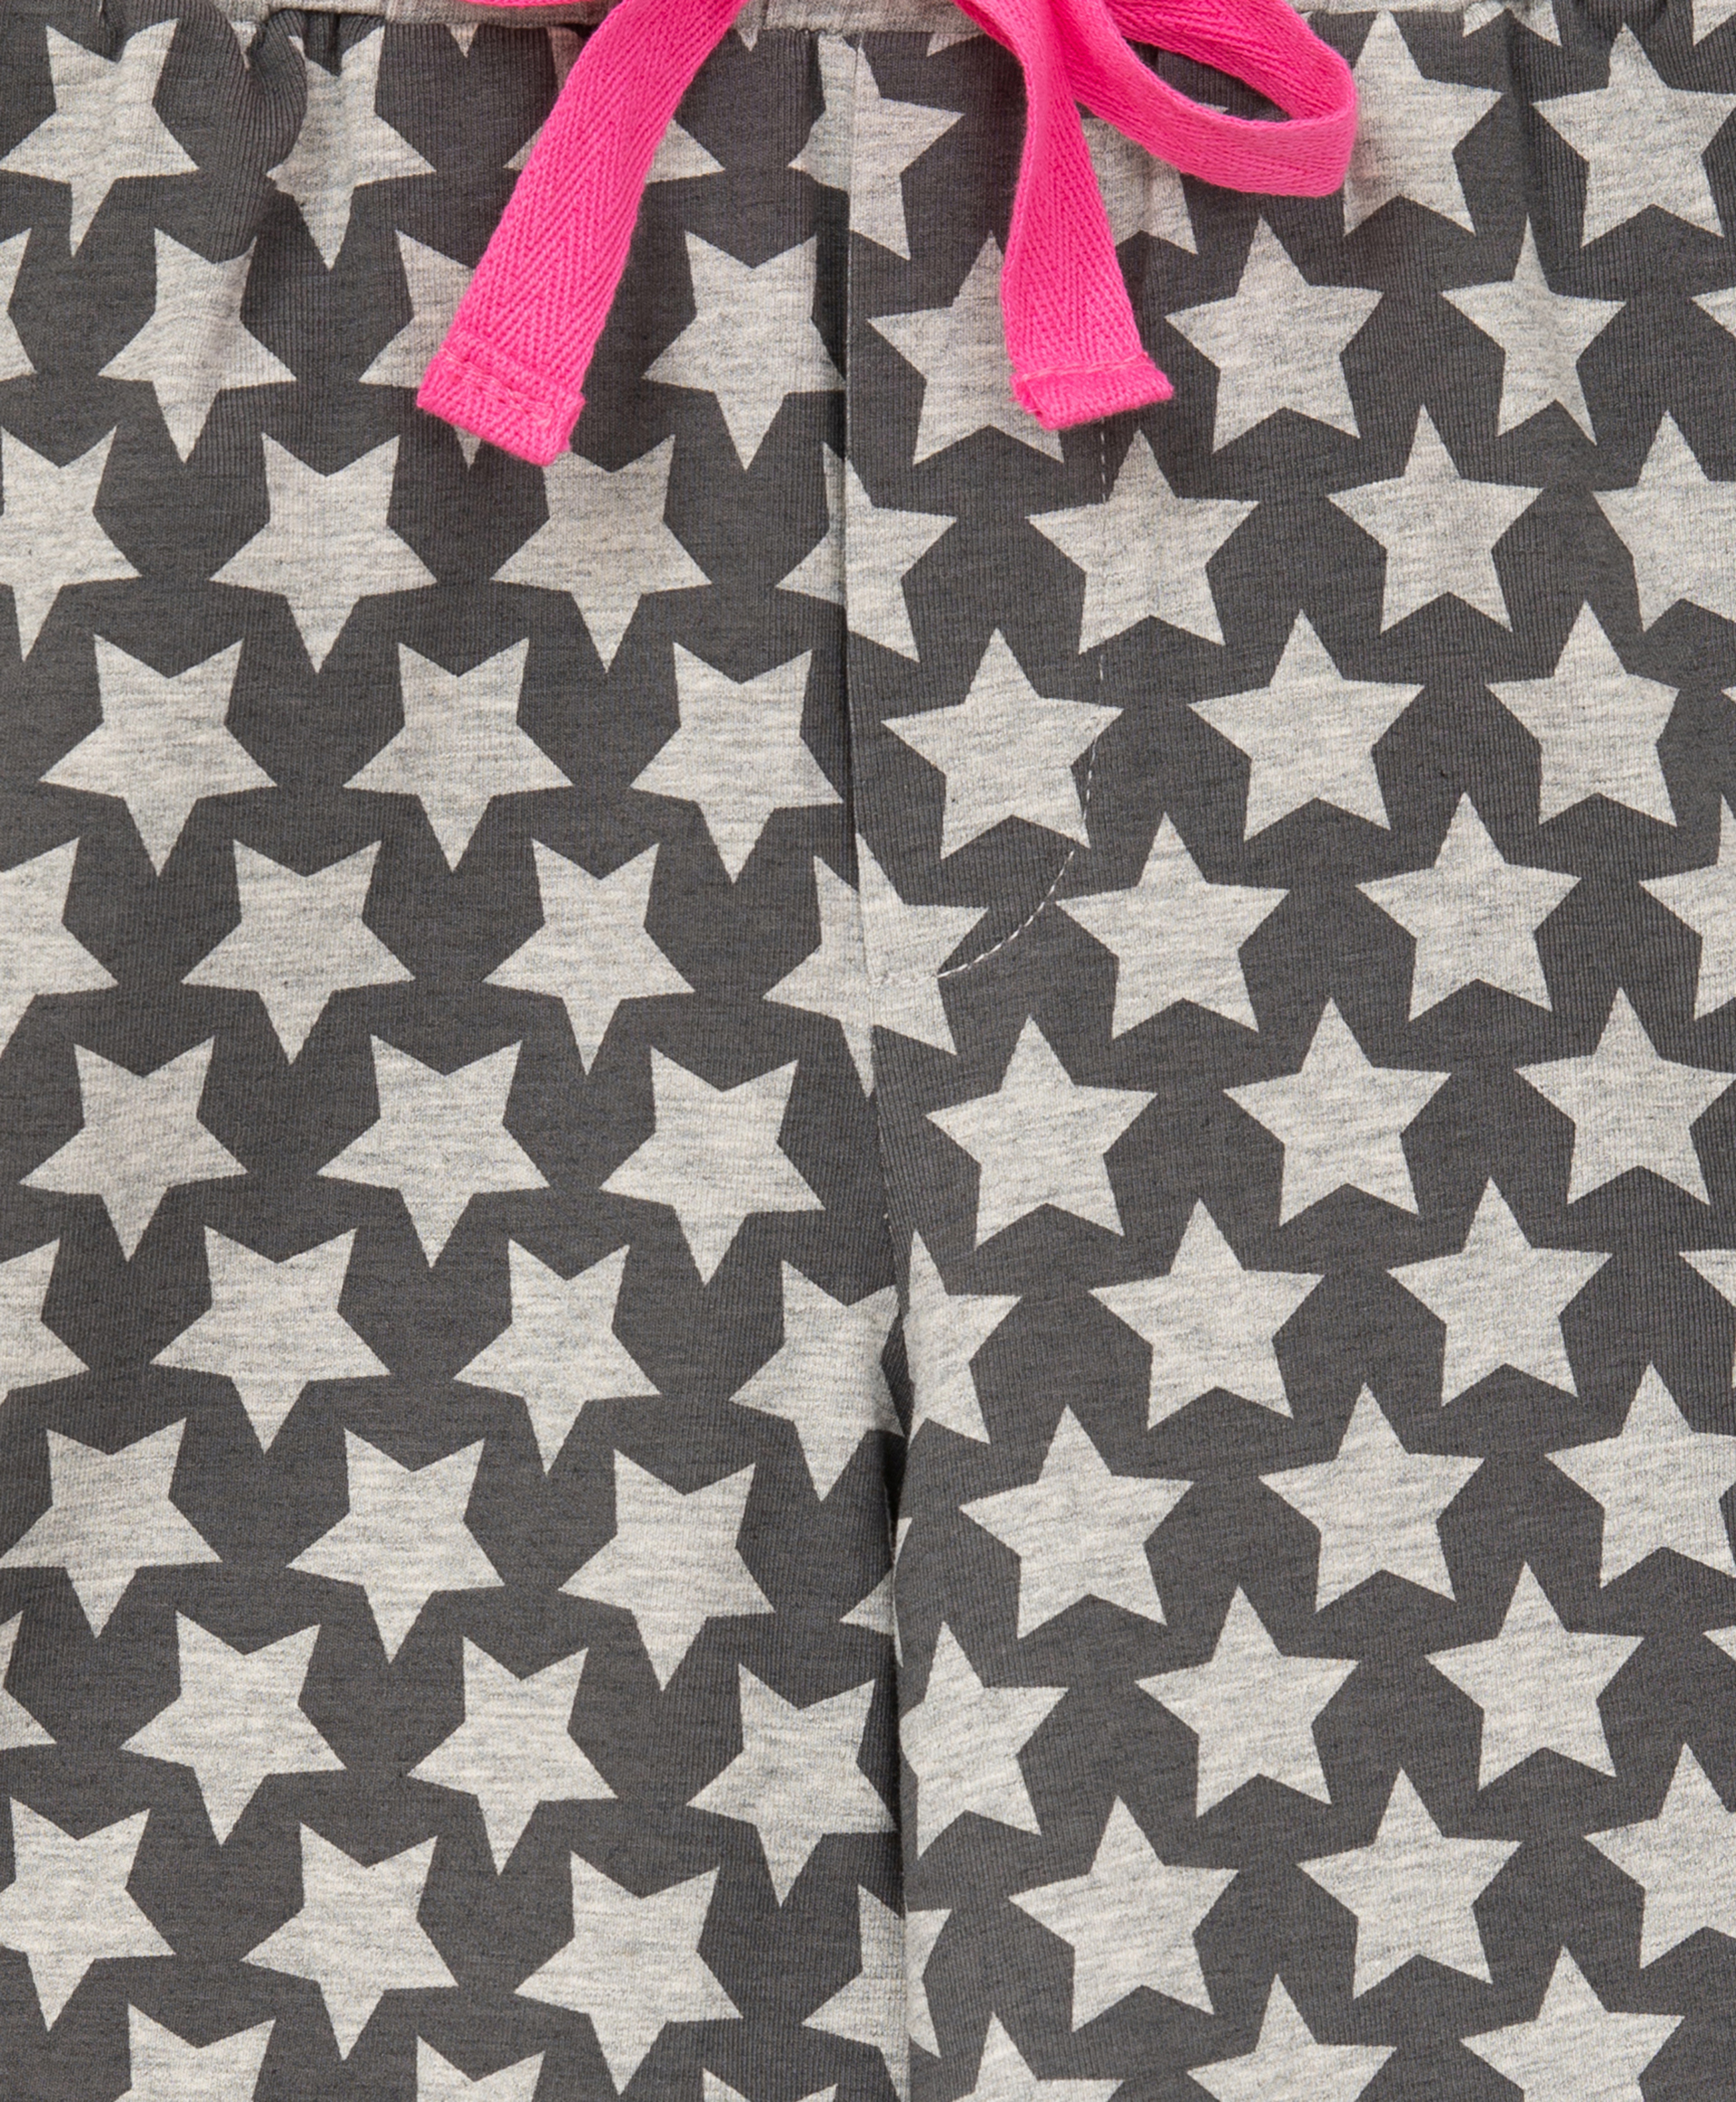 Пижама с принтом розовая Gulliver 22100GC9701, размер 146-152, цвет розовый - фото 5